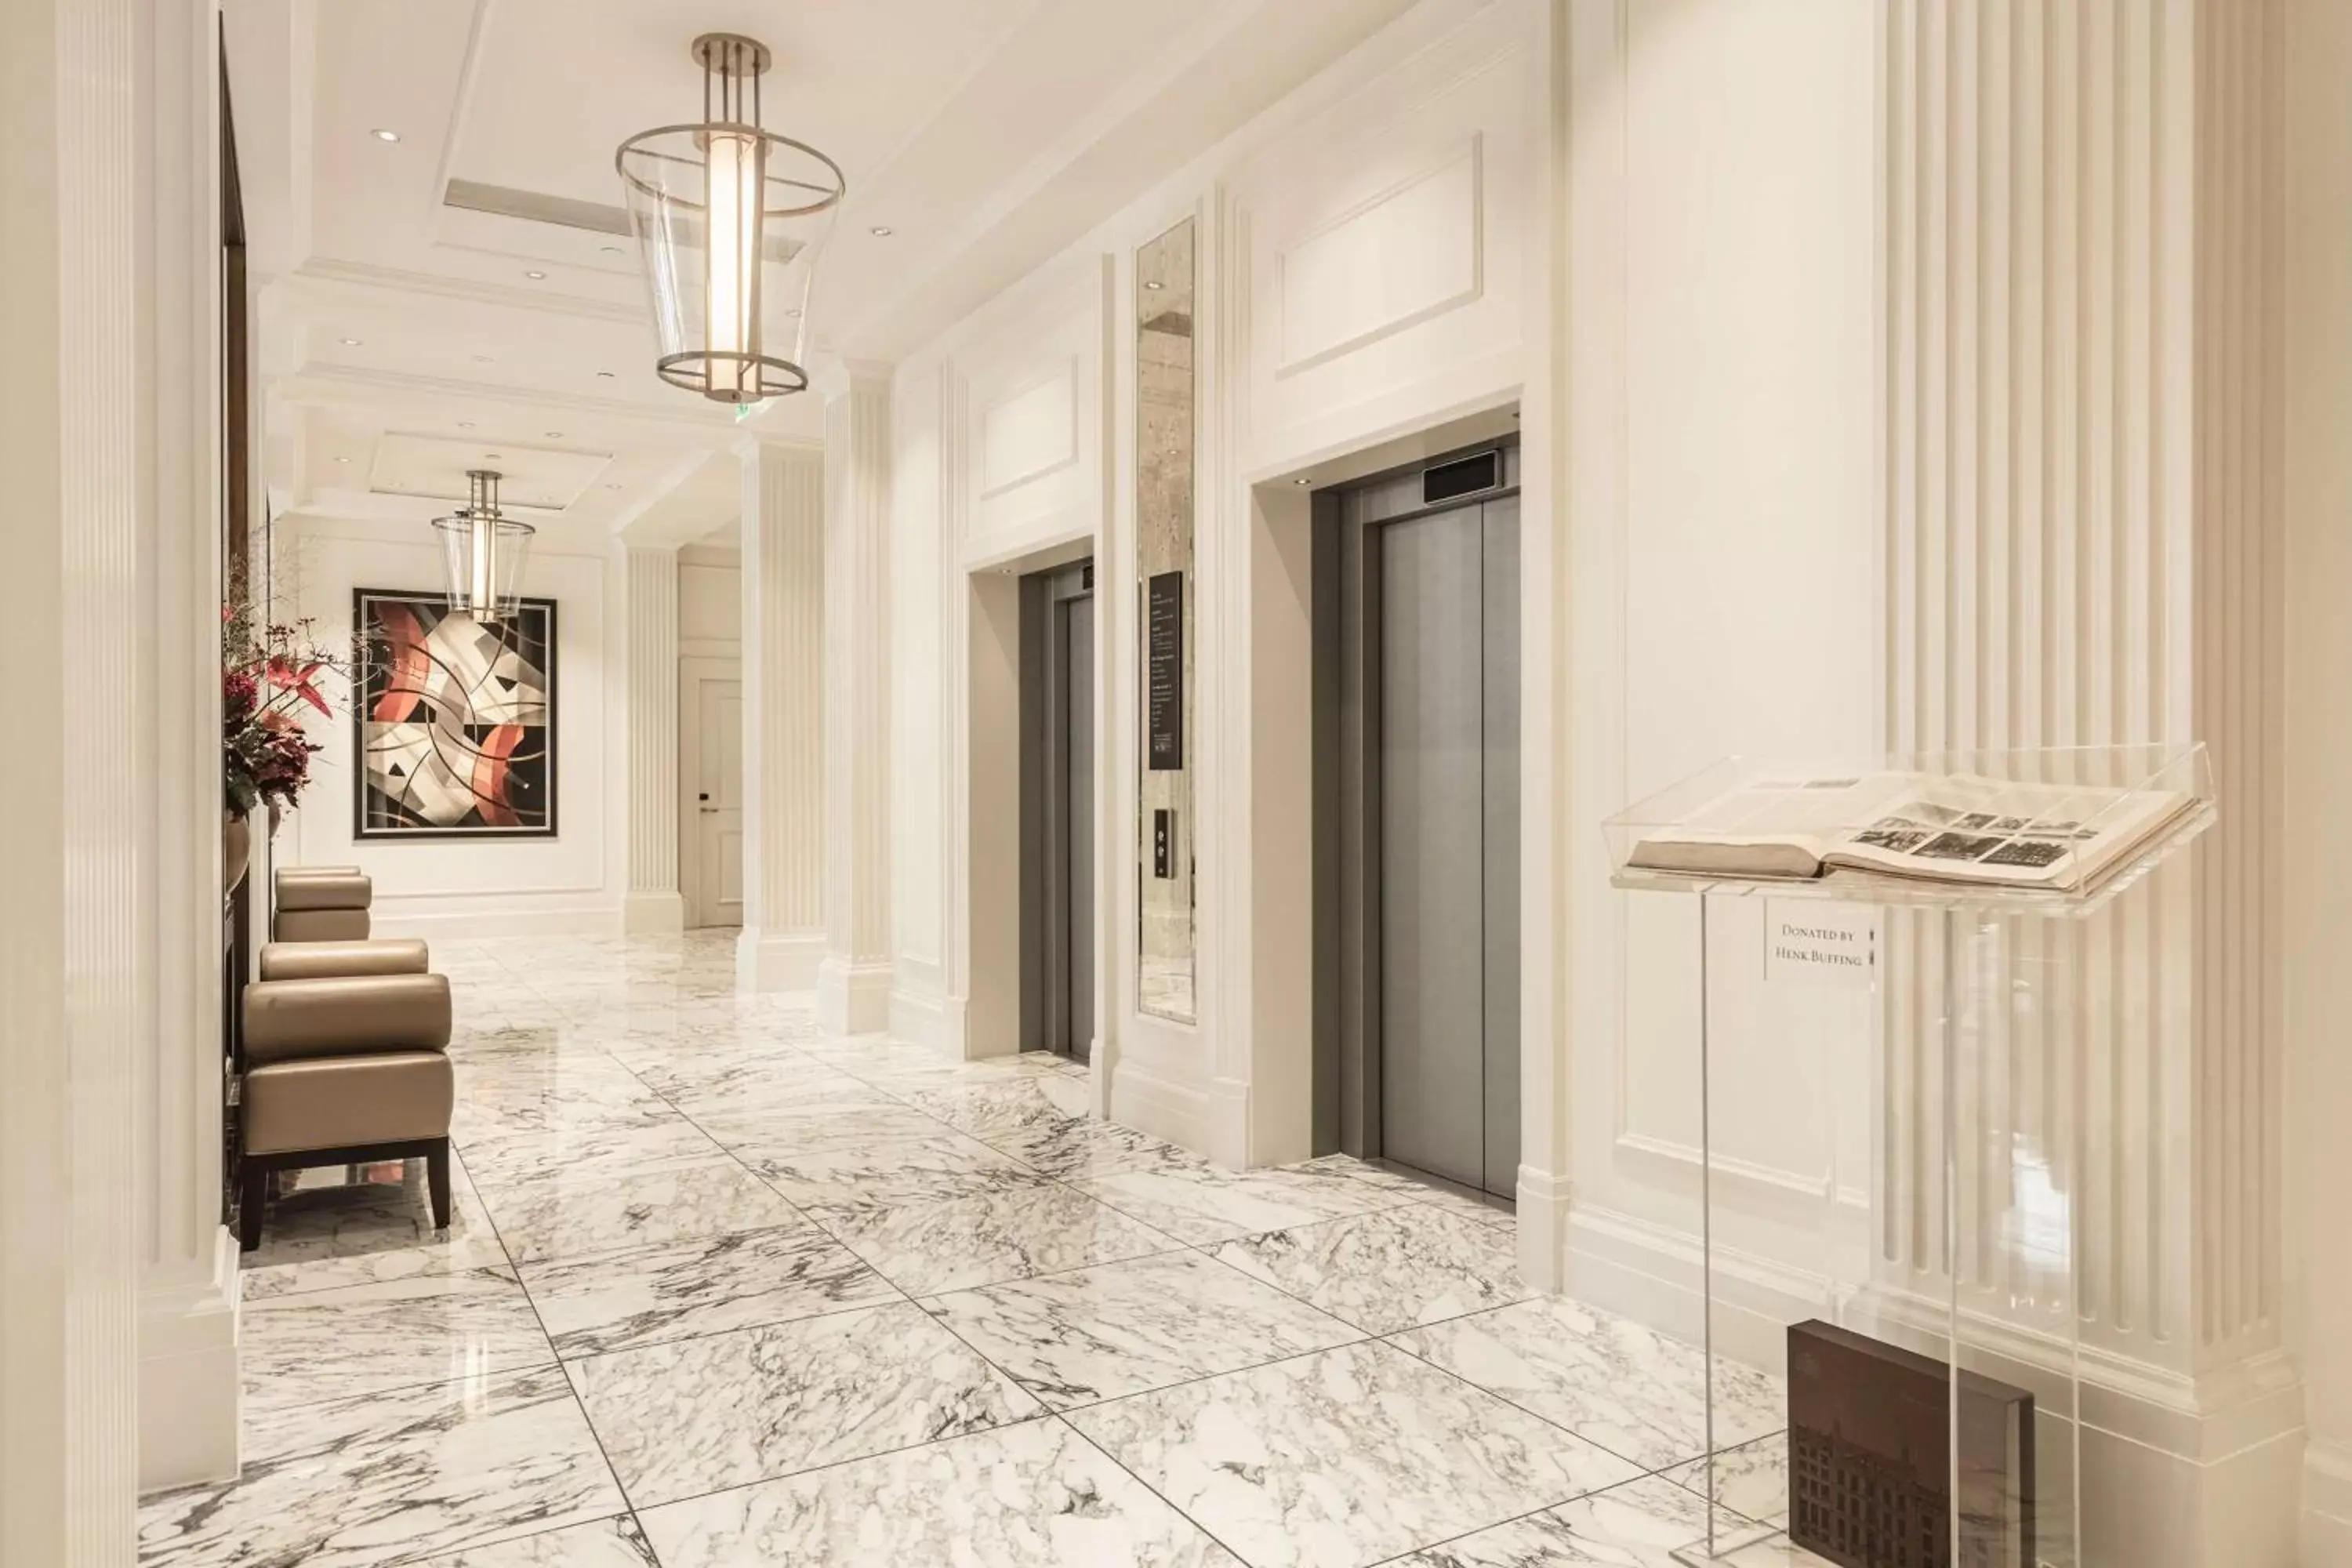 Lobby or reception in Waldorf Astoria Amsterdam